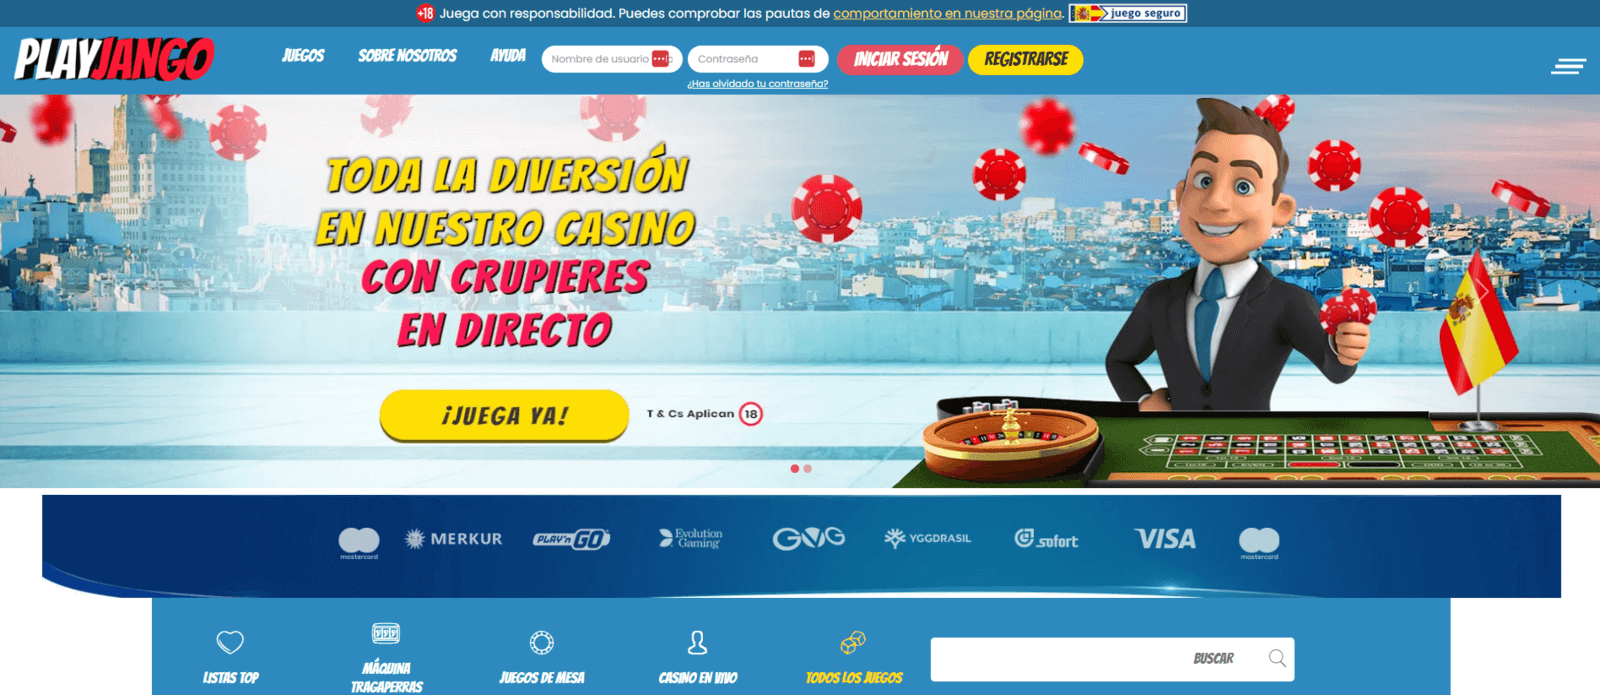 Promociones de PlayJango casino online en España